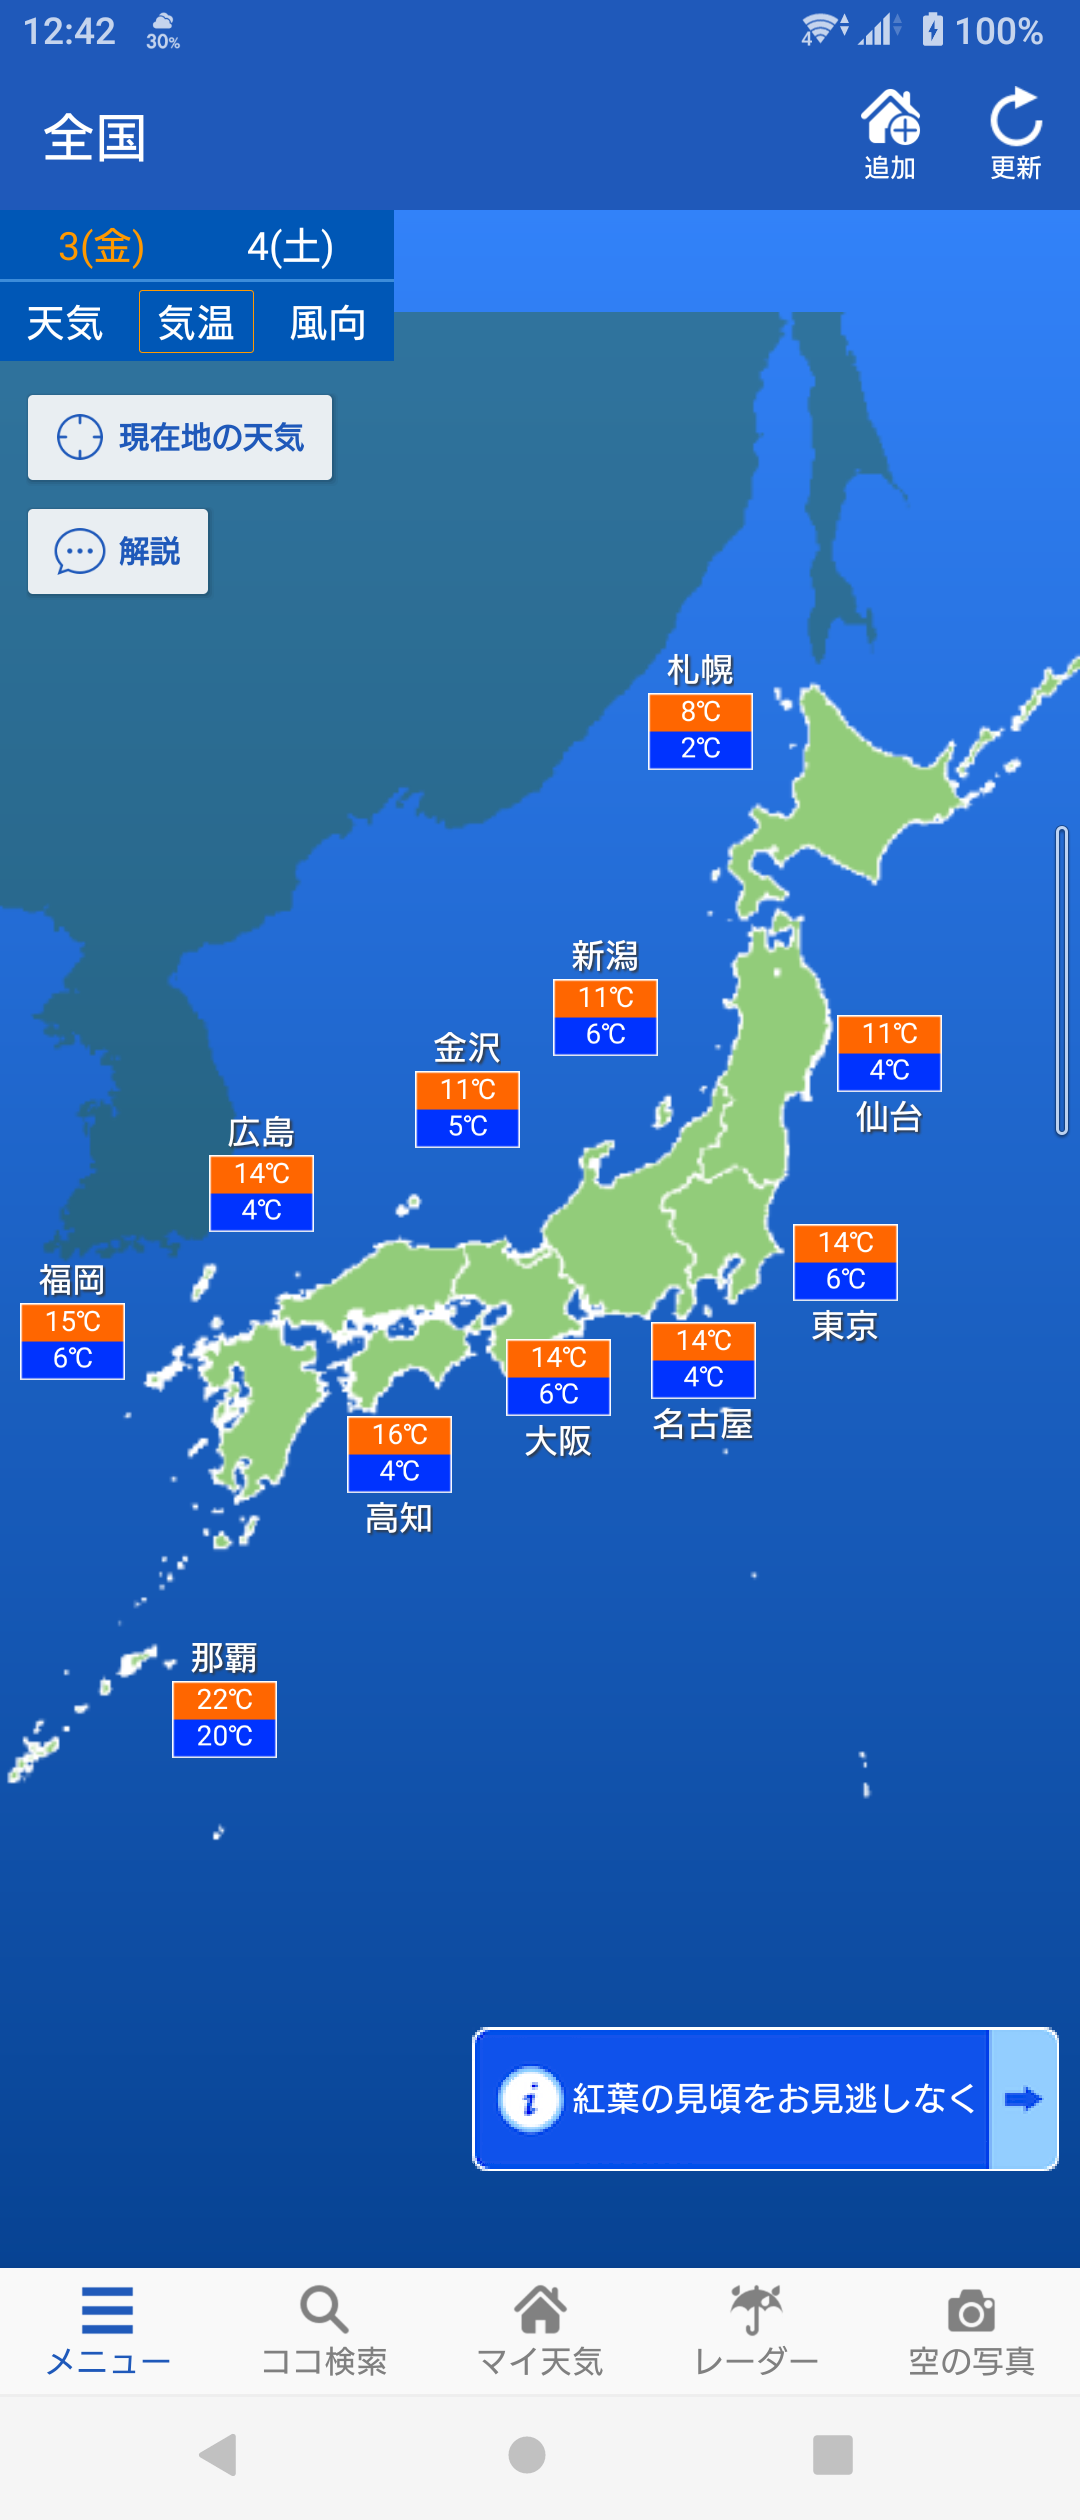 今日明日の気温。琉球王国だけは温かいが、...